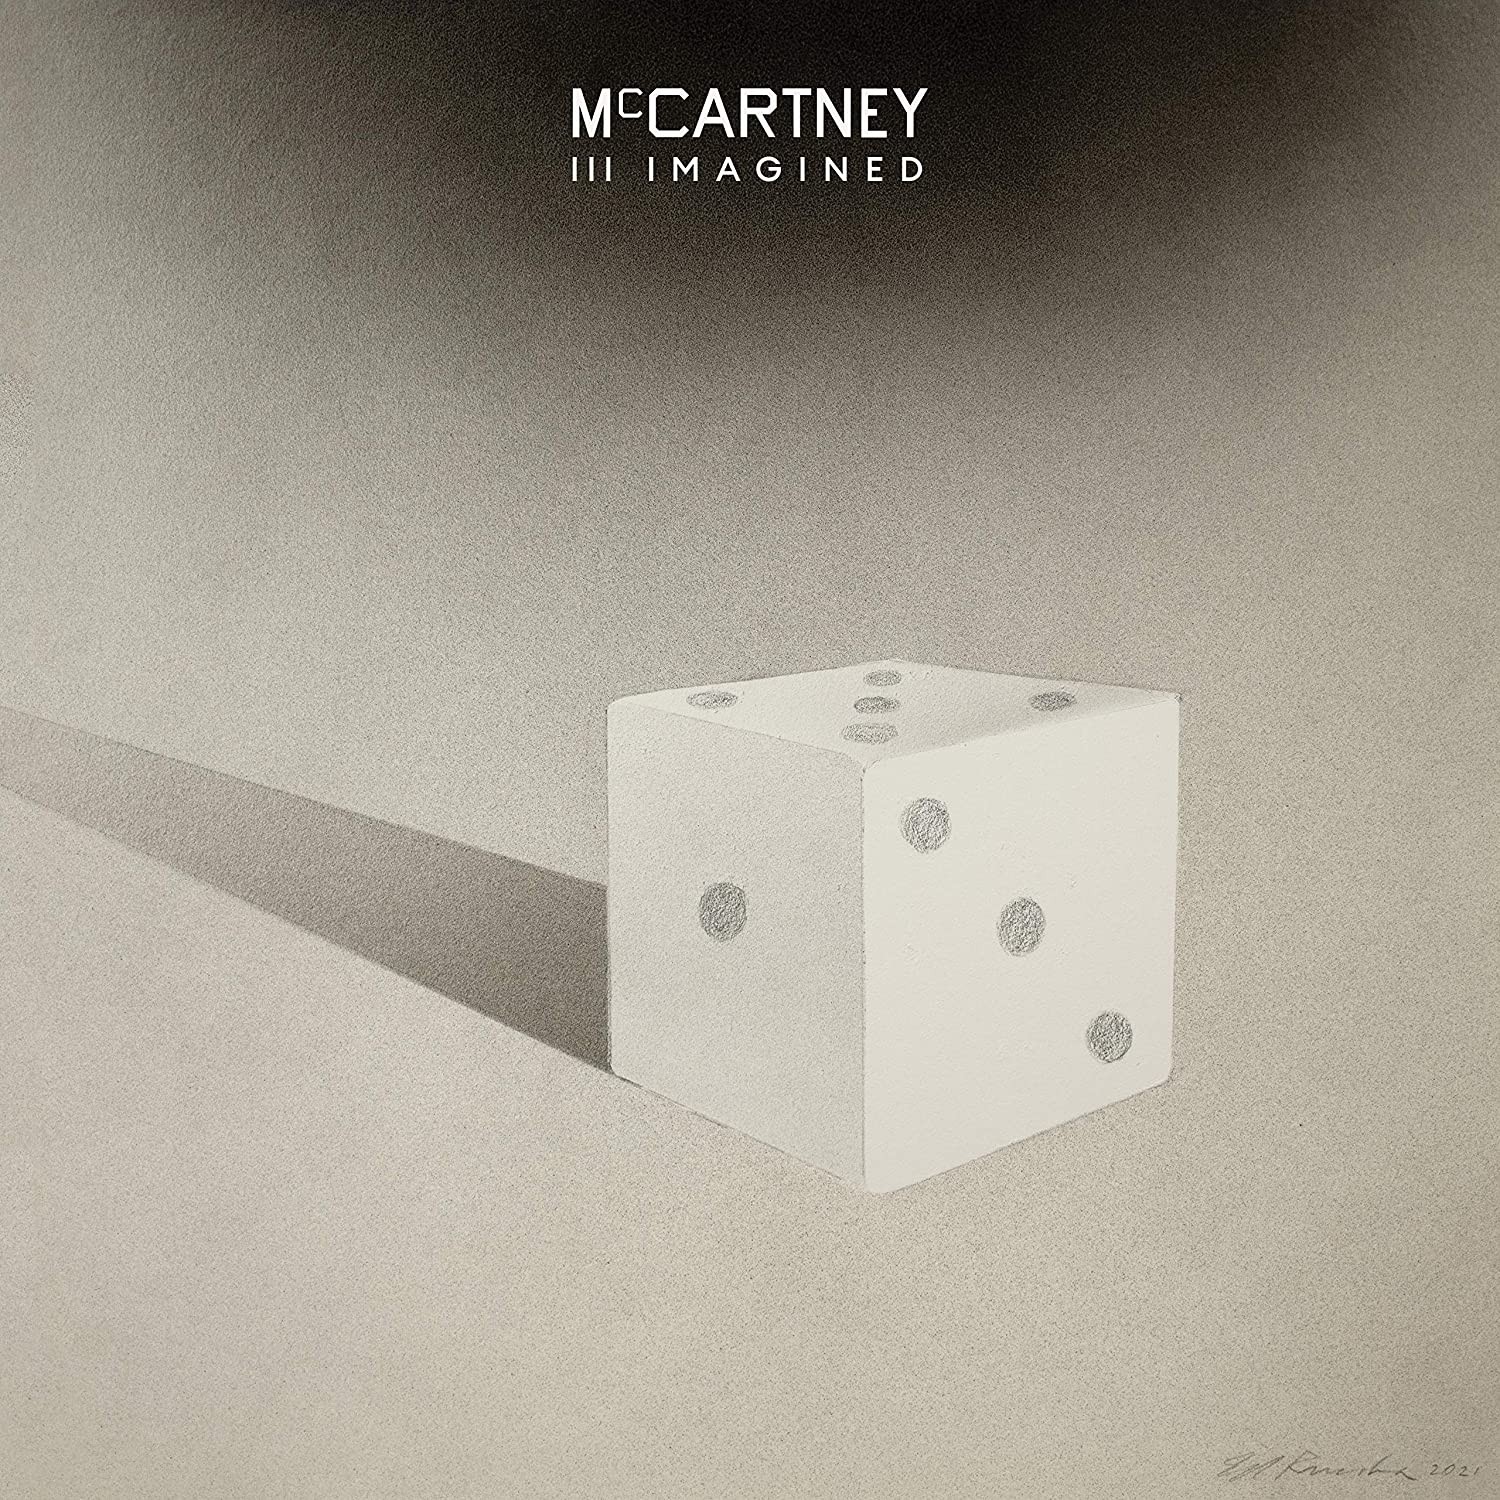 Paul McCartney - Mccartney III Imagined (Gold) 2XLP Vinyl